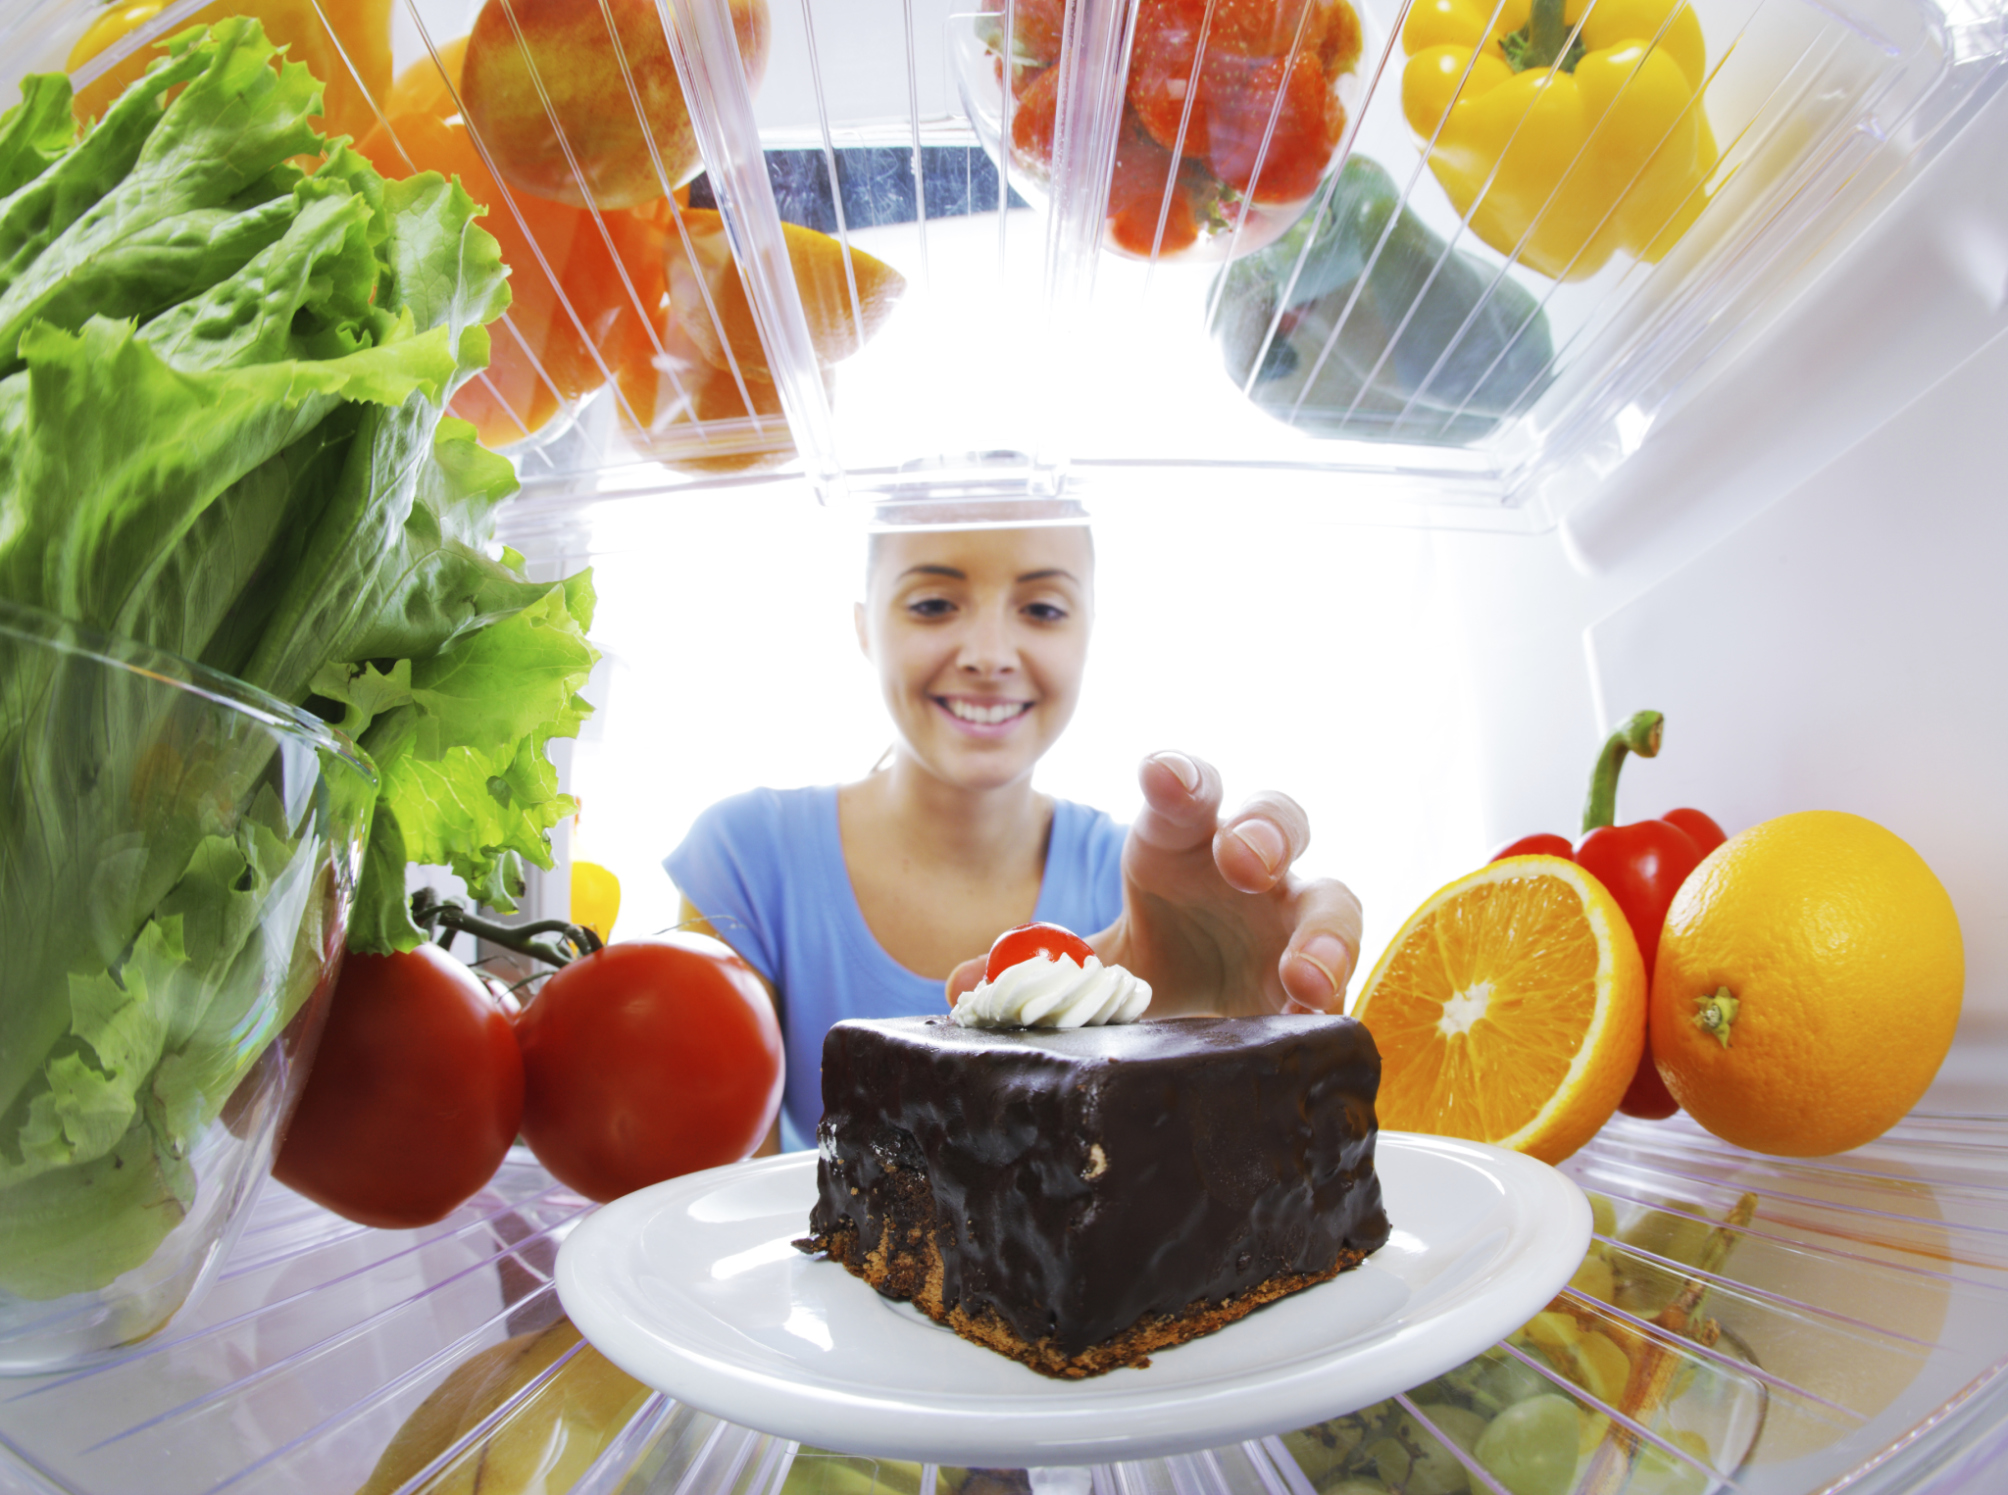 Lưu trữ đồ ăn trong tủ lạnh sai cách khiến cơ thể mang bệnh